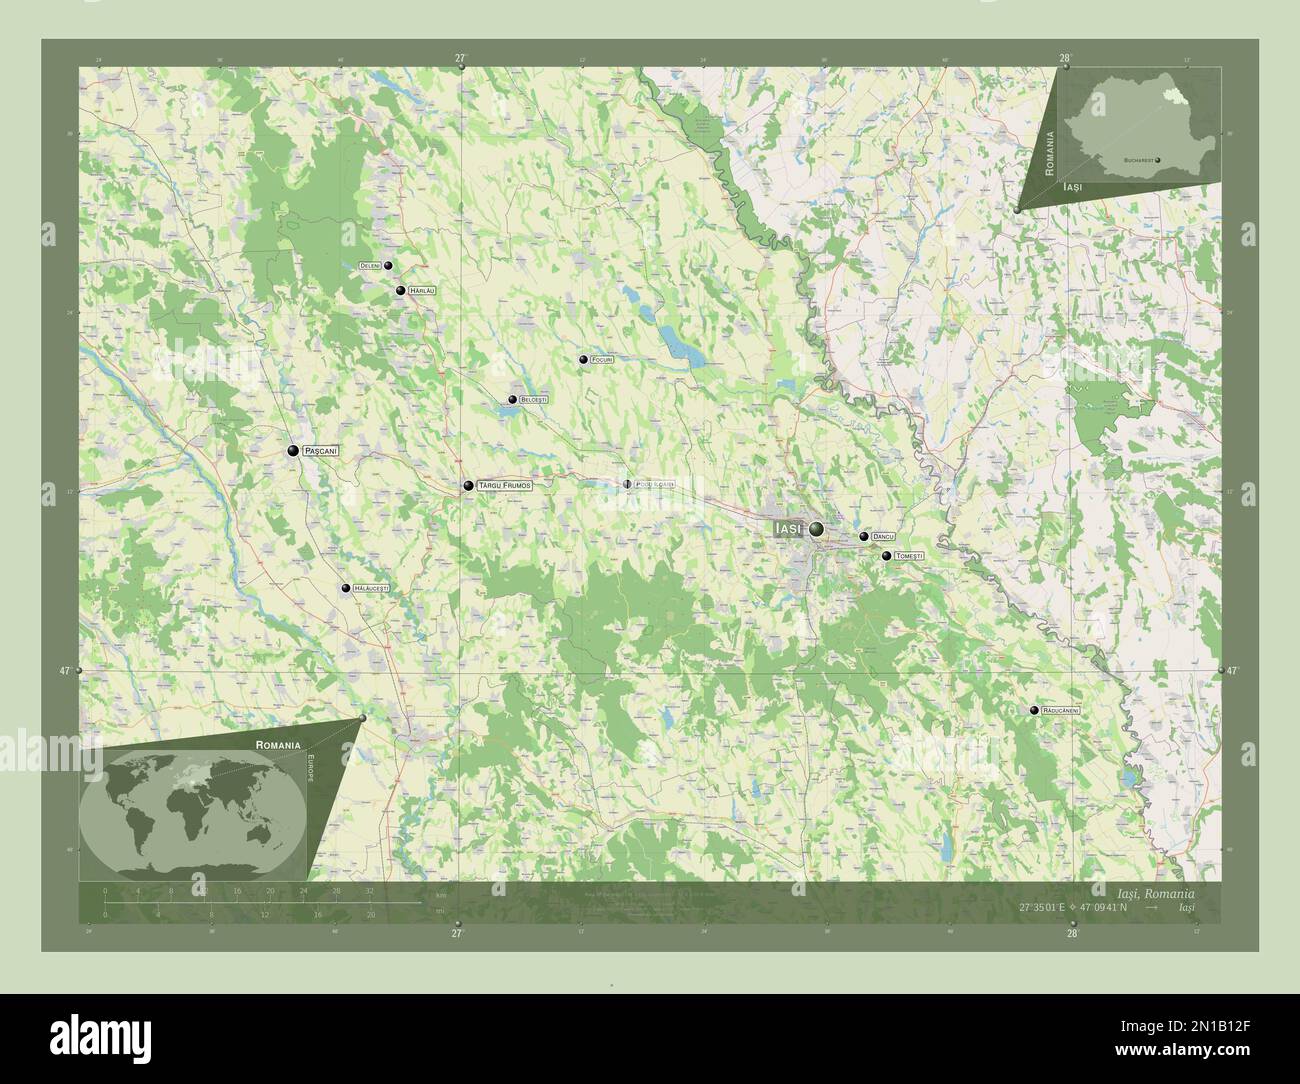 Iasi, contea della Romania. Aprire la mappa stradale. Località e nomi delle principali città della regione. Mappe delle posizioni ausiliarie degli angoli Foto Stock